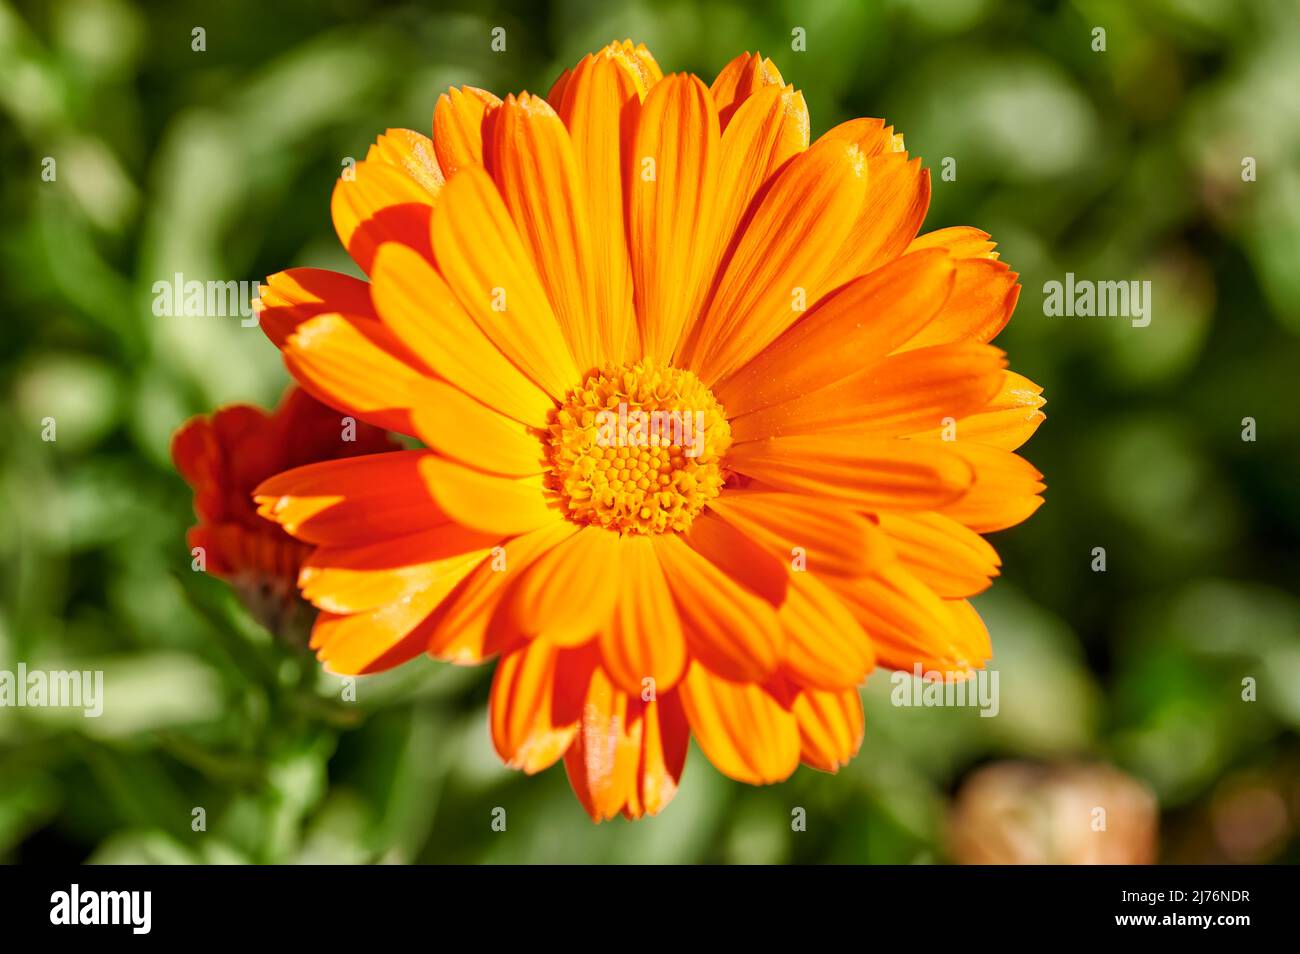 Nahaufnahme einer orangefarbenen Blüte der Calendula (Calendula officinalis), einer Butterblume oder Ringelblume, einem Kraut der Familie der Asterngewächse, mit grünen Blättern, konzentriert auf Stockfoto